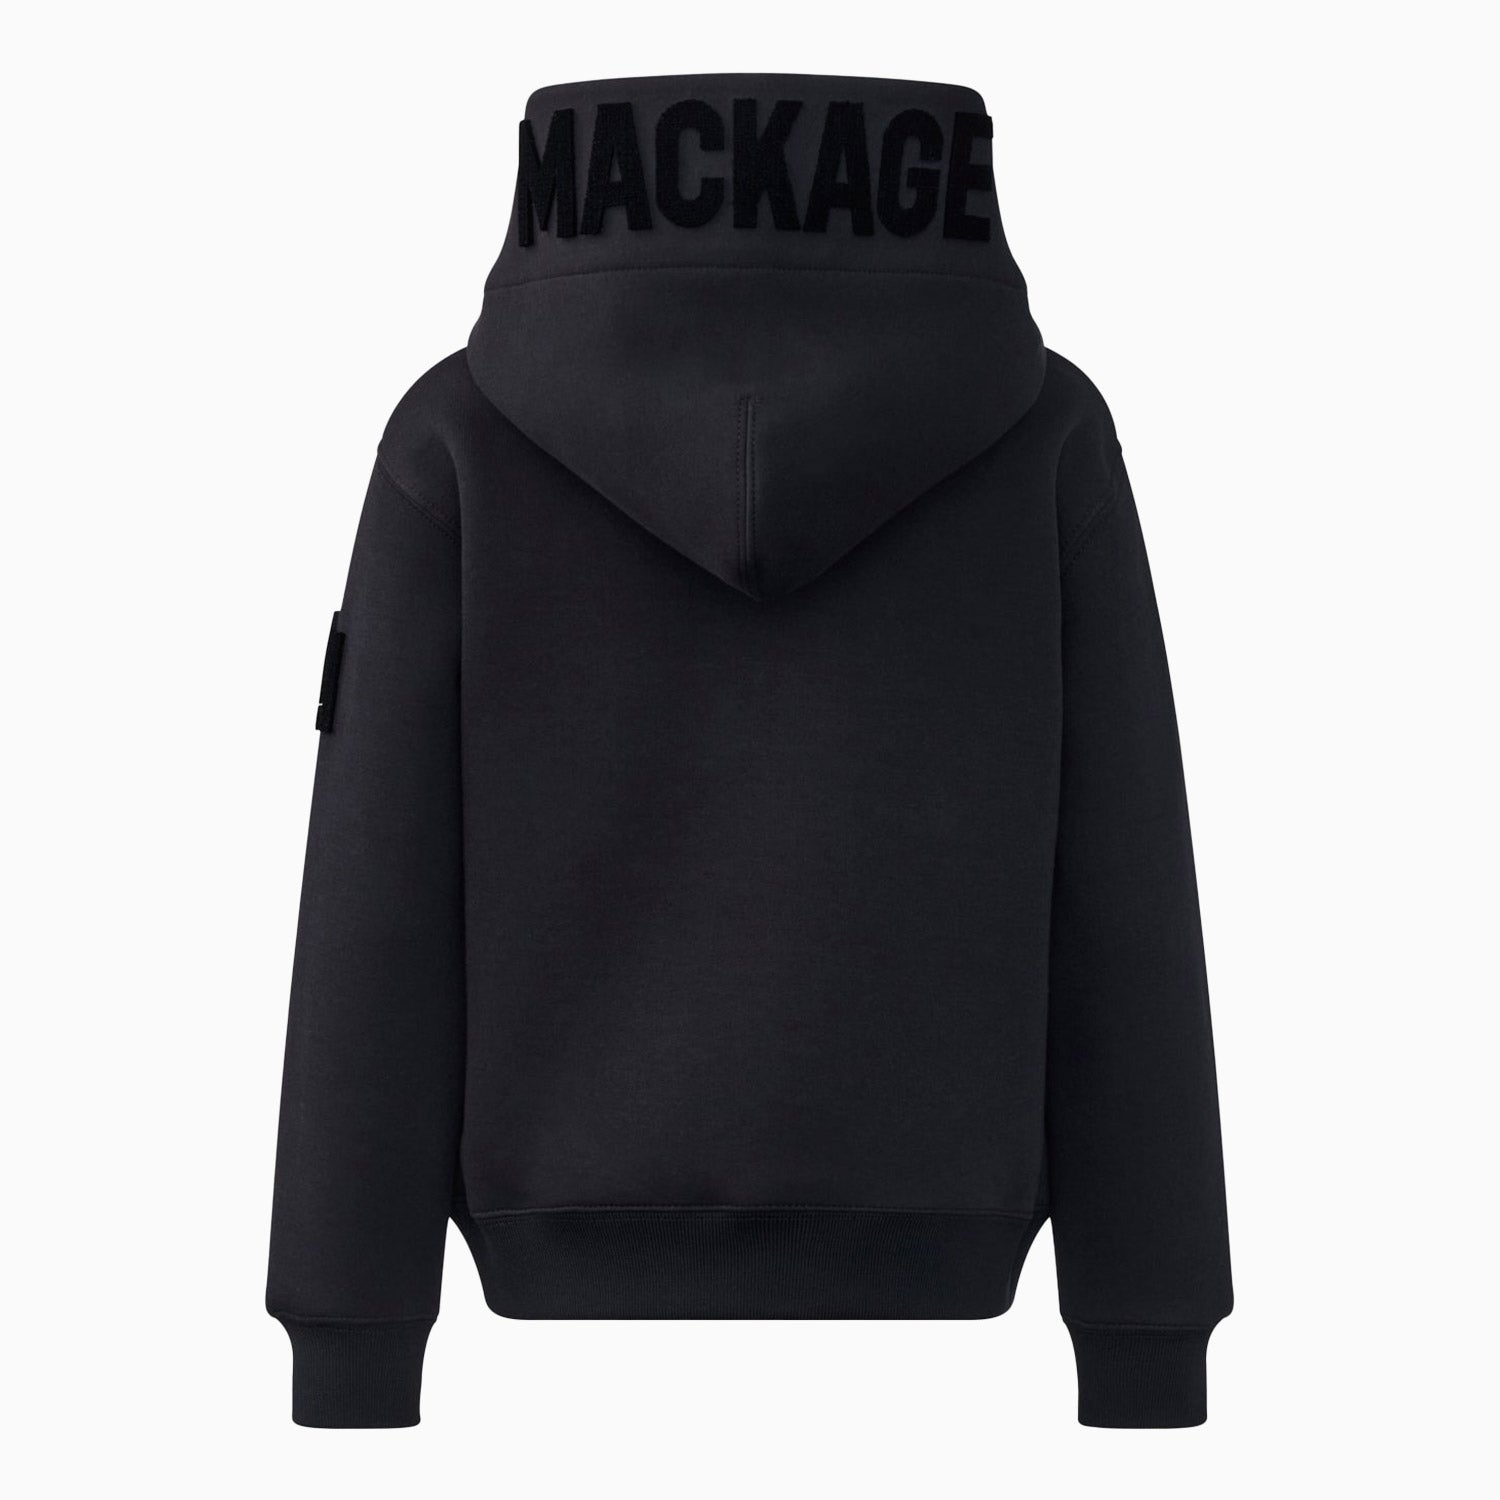 mackage-kids-dru-double-face-jersey-pull-over-hoodie-dru-black